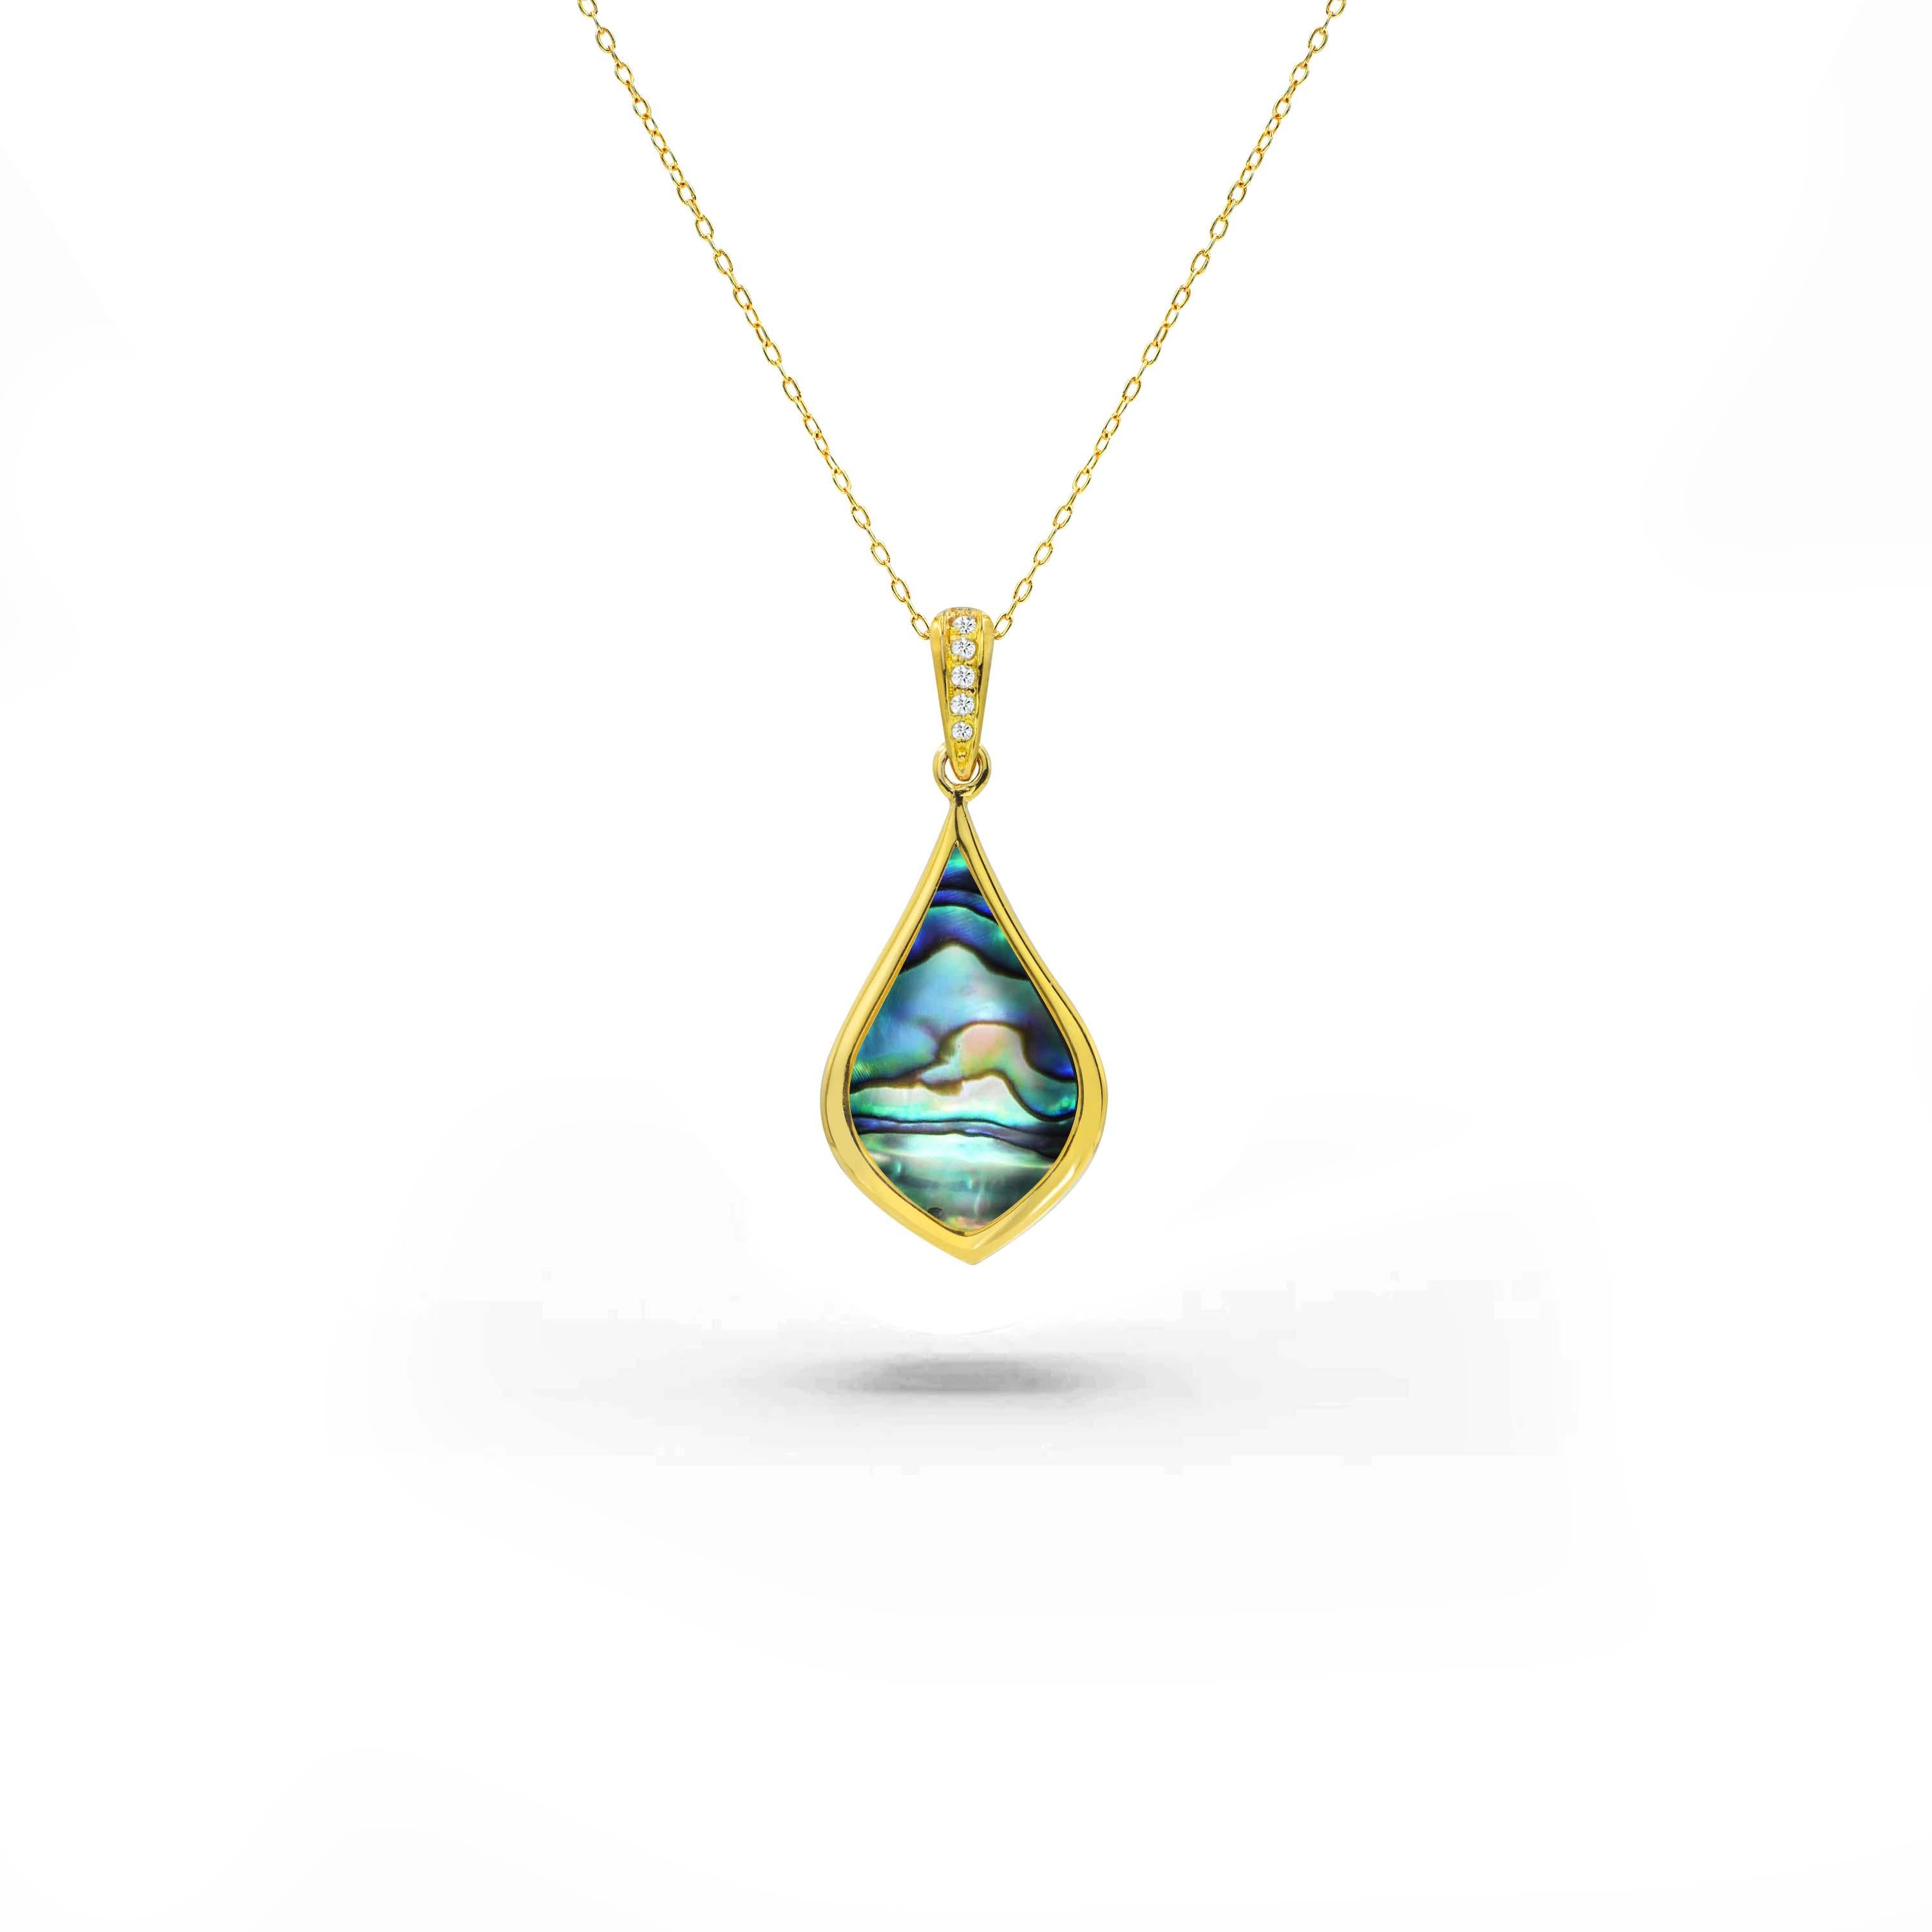 Voici notre exquis collier rempli d'or 18 carats, une fusion étonnante de la beauté naturelle et de l'artisanat raffiné. Cette pièce captivante met en valeur l'allure irisée de l'Eleg, l'élégance délicate de la nacre et le charme sophistiqué du